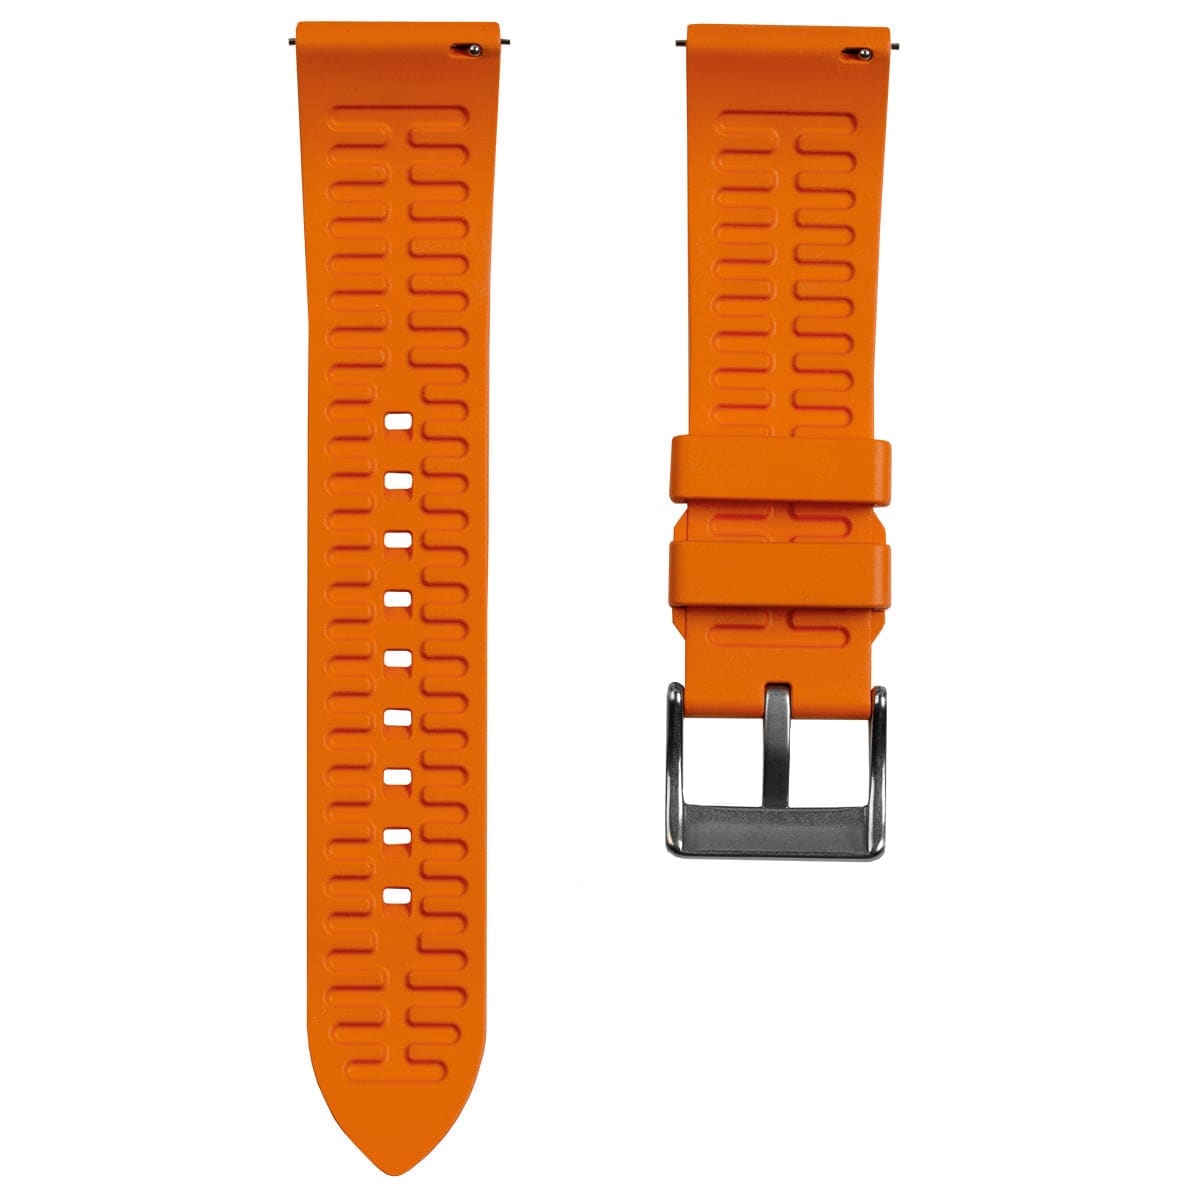 Zennor Quick Release FKM Rubber Watch Strap by ZULUDIVER - Orange